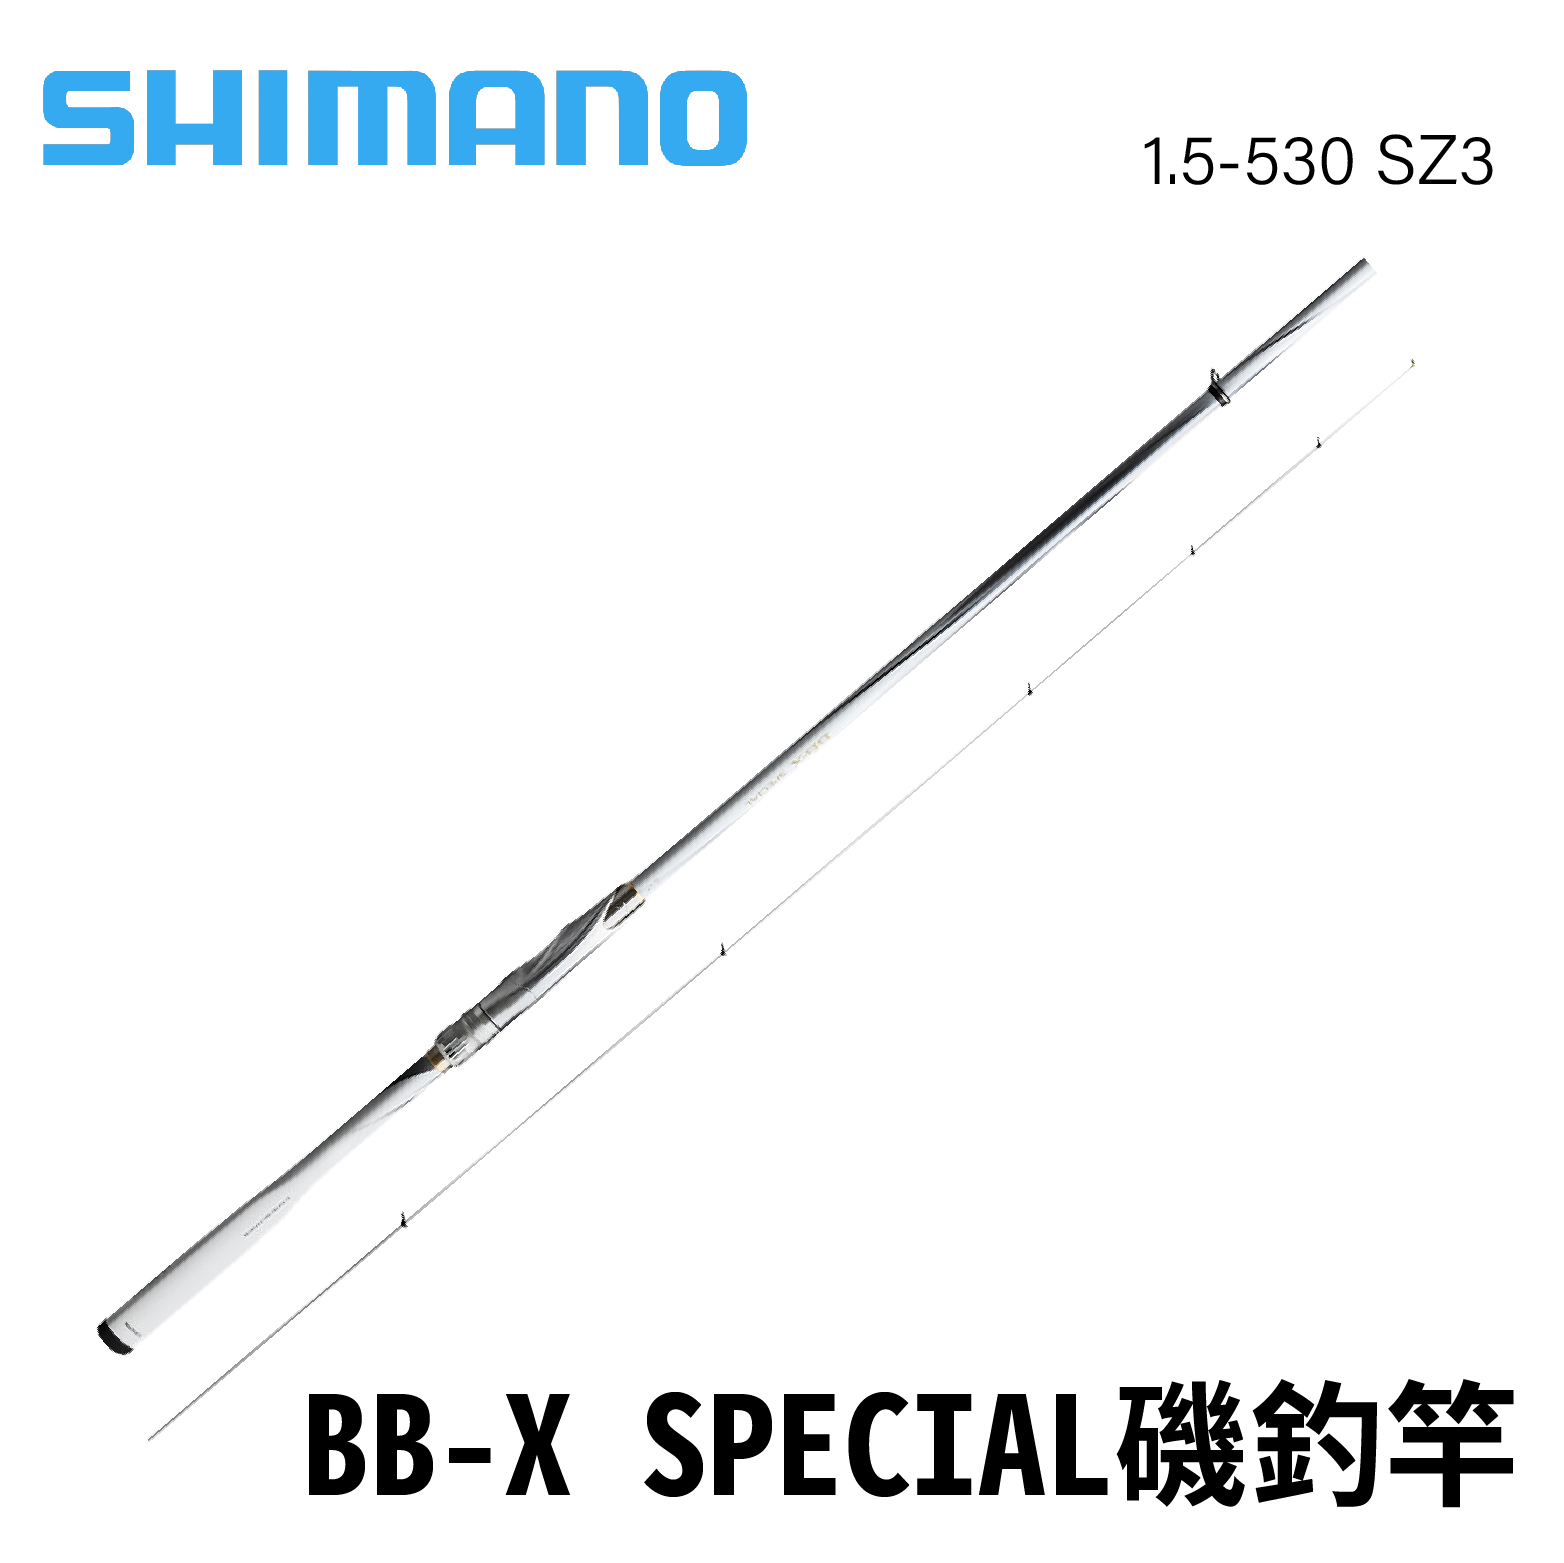 bb-x special sz3 1.5 500-530-